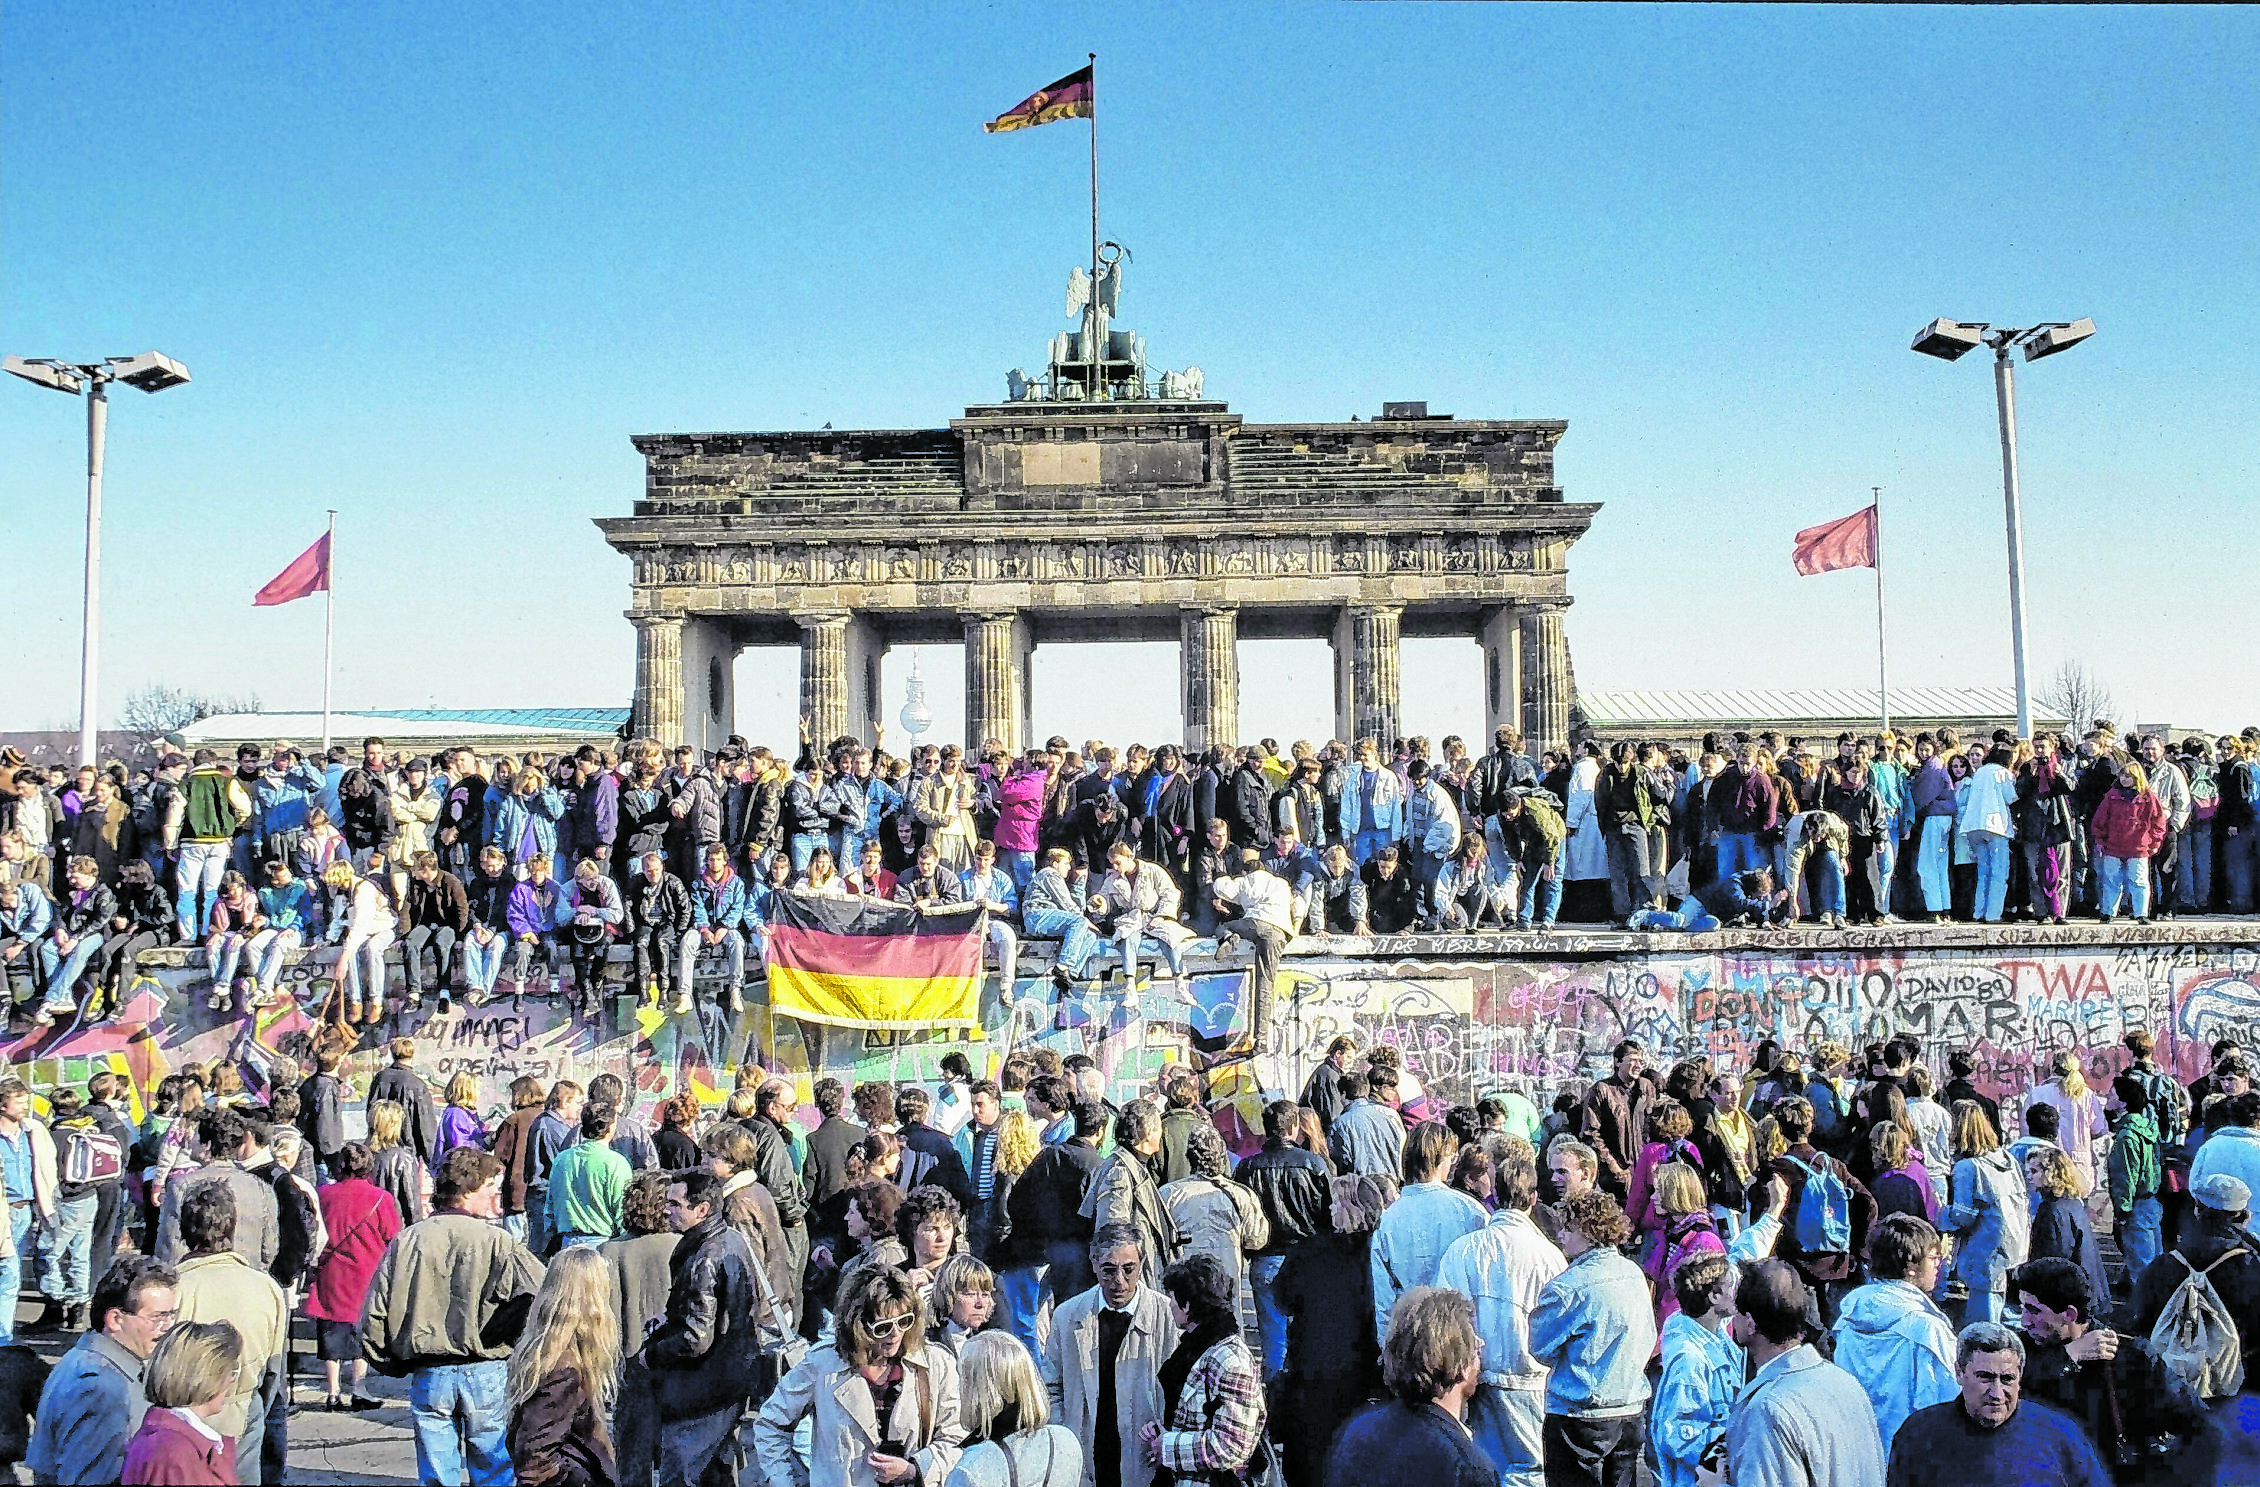 Menschen aus Ost und West feierten den Fall der Berliner Mauer gemeinsam am Brandenburger Tor in Berlin.